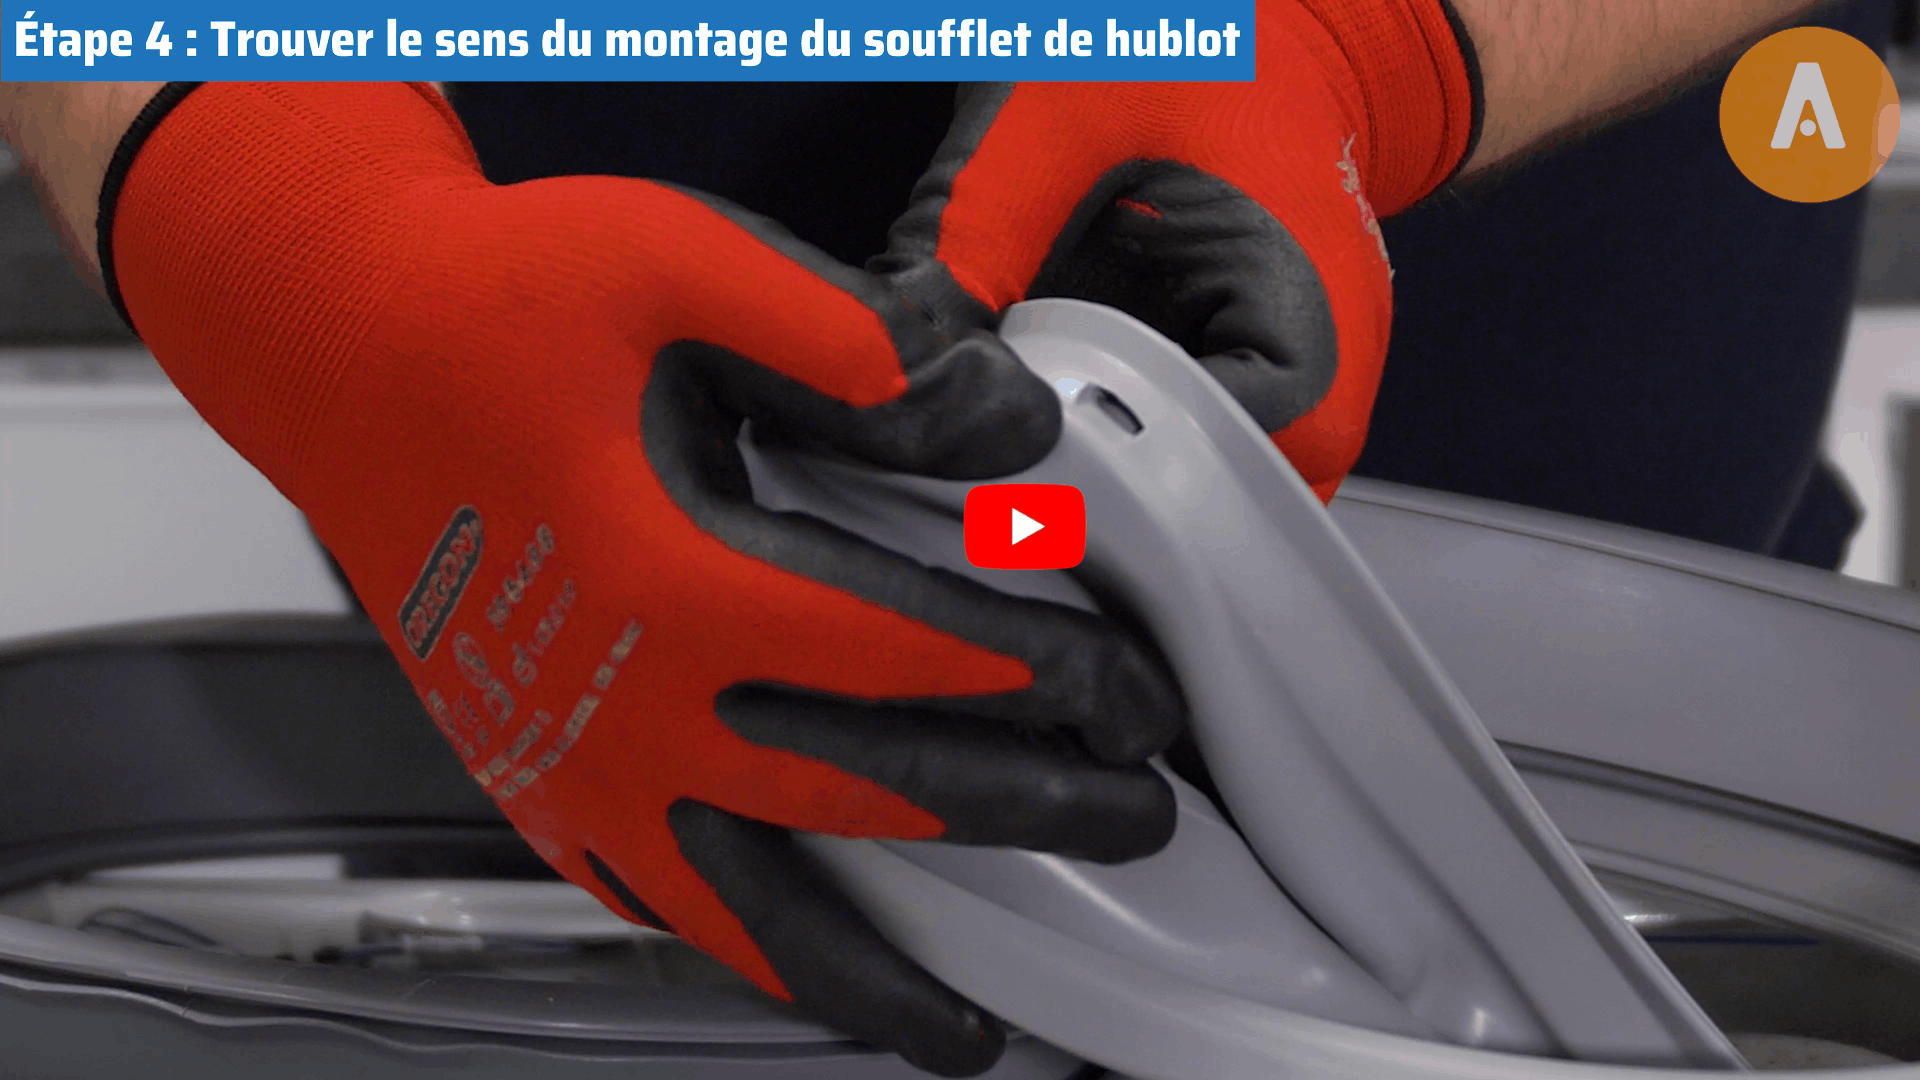 Comment remplacer ou changer le joint de hublot d'une machine à laver ? -  Blog Choukapieces